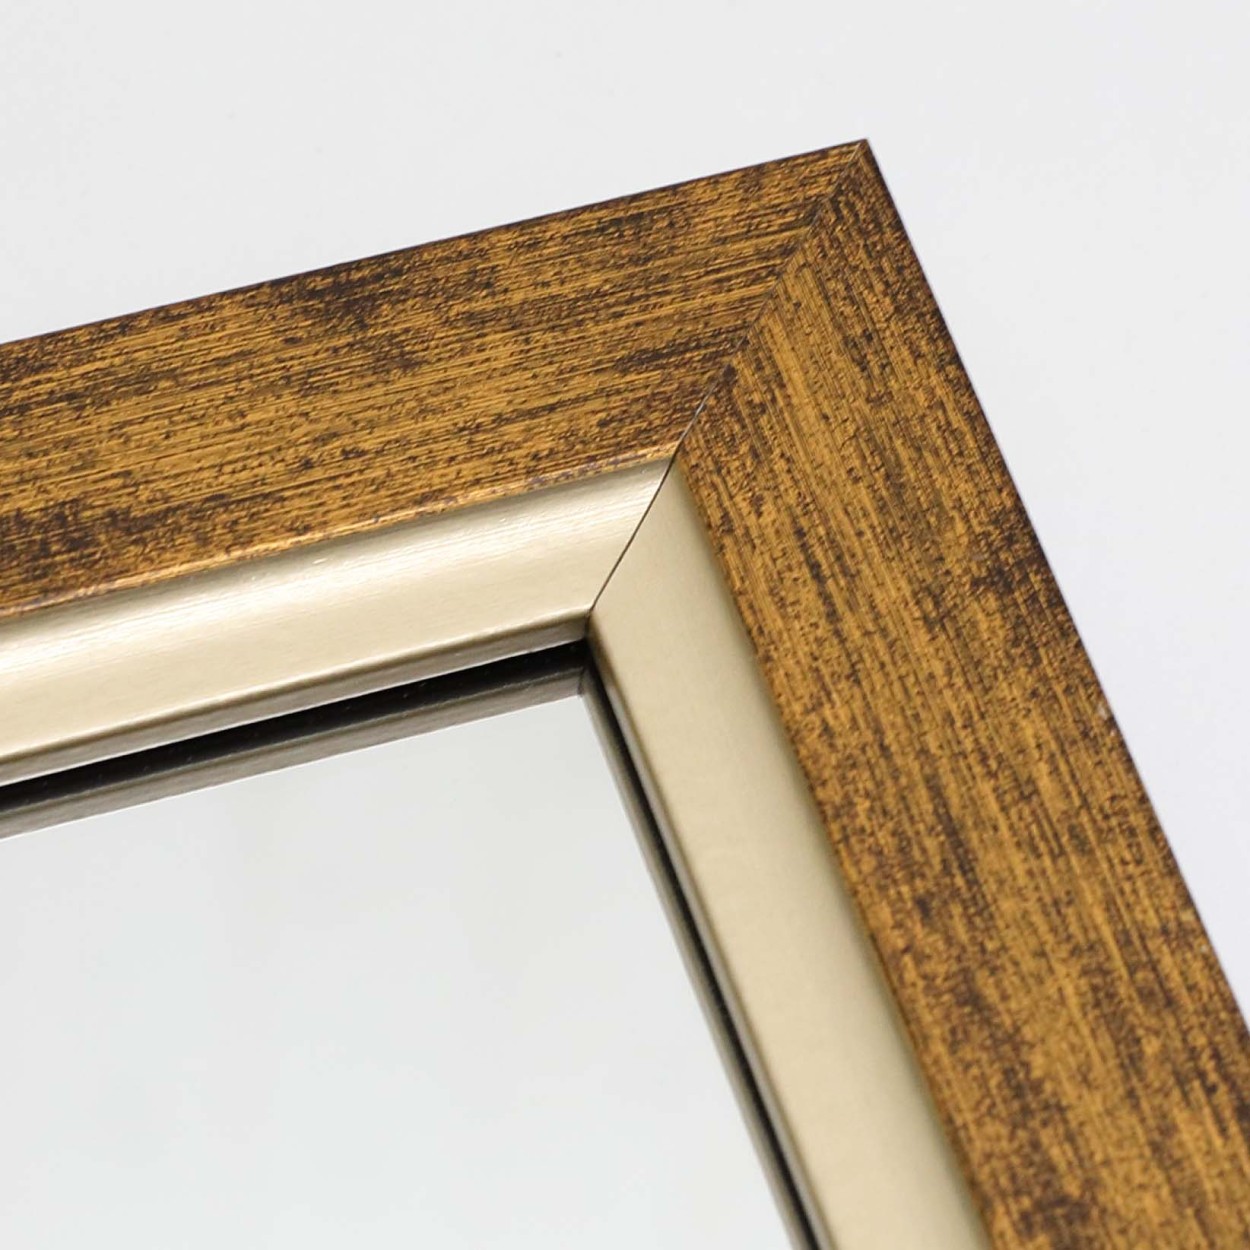 鏡 壁掛け 卓上 サイズ 21×26.5cm ゴールド ミラー 長方形 木目調 